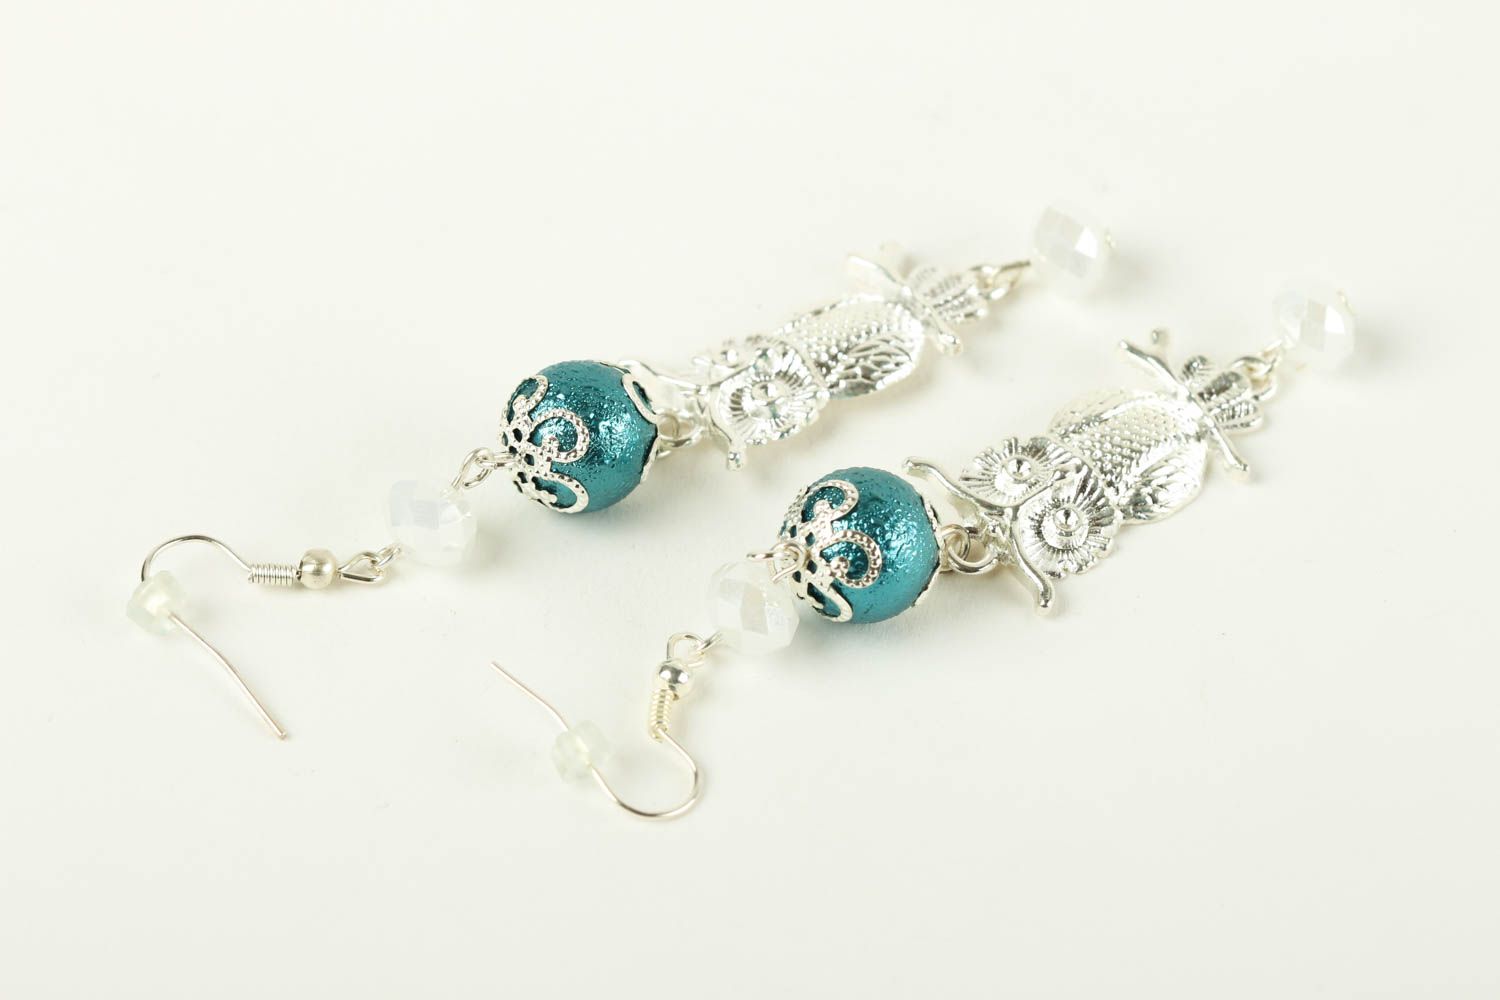 Handmade earrings designer earrings gift ideas beaded jewelry for women photo 4